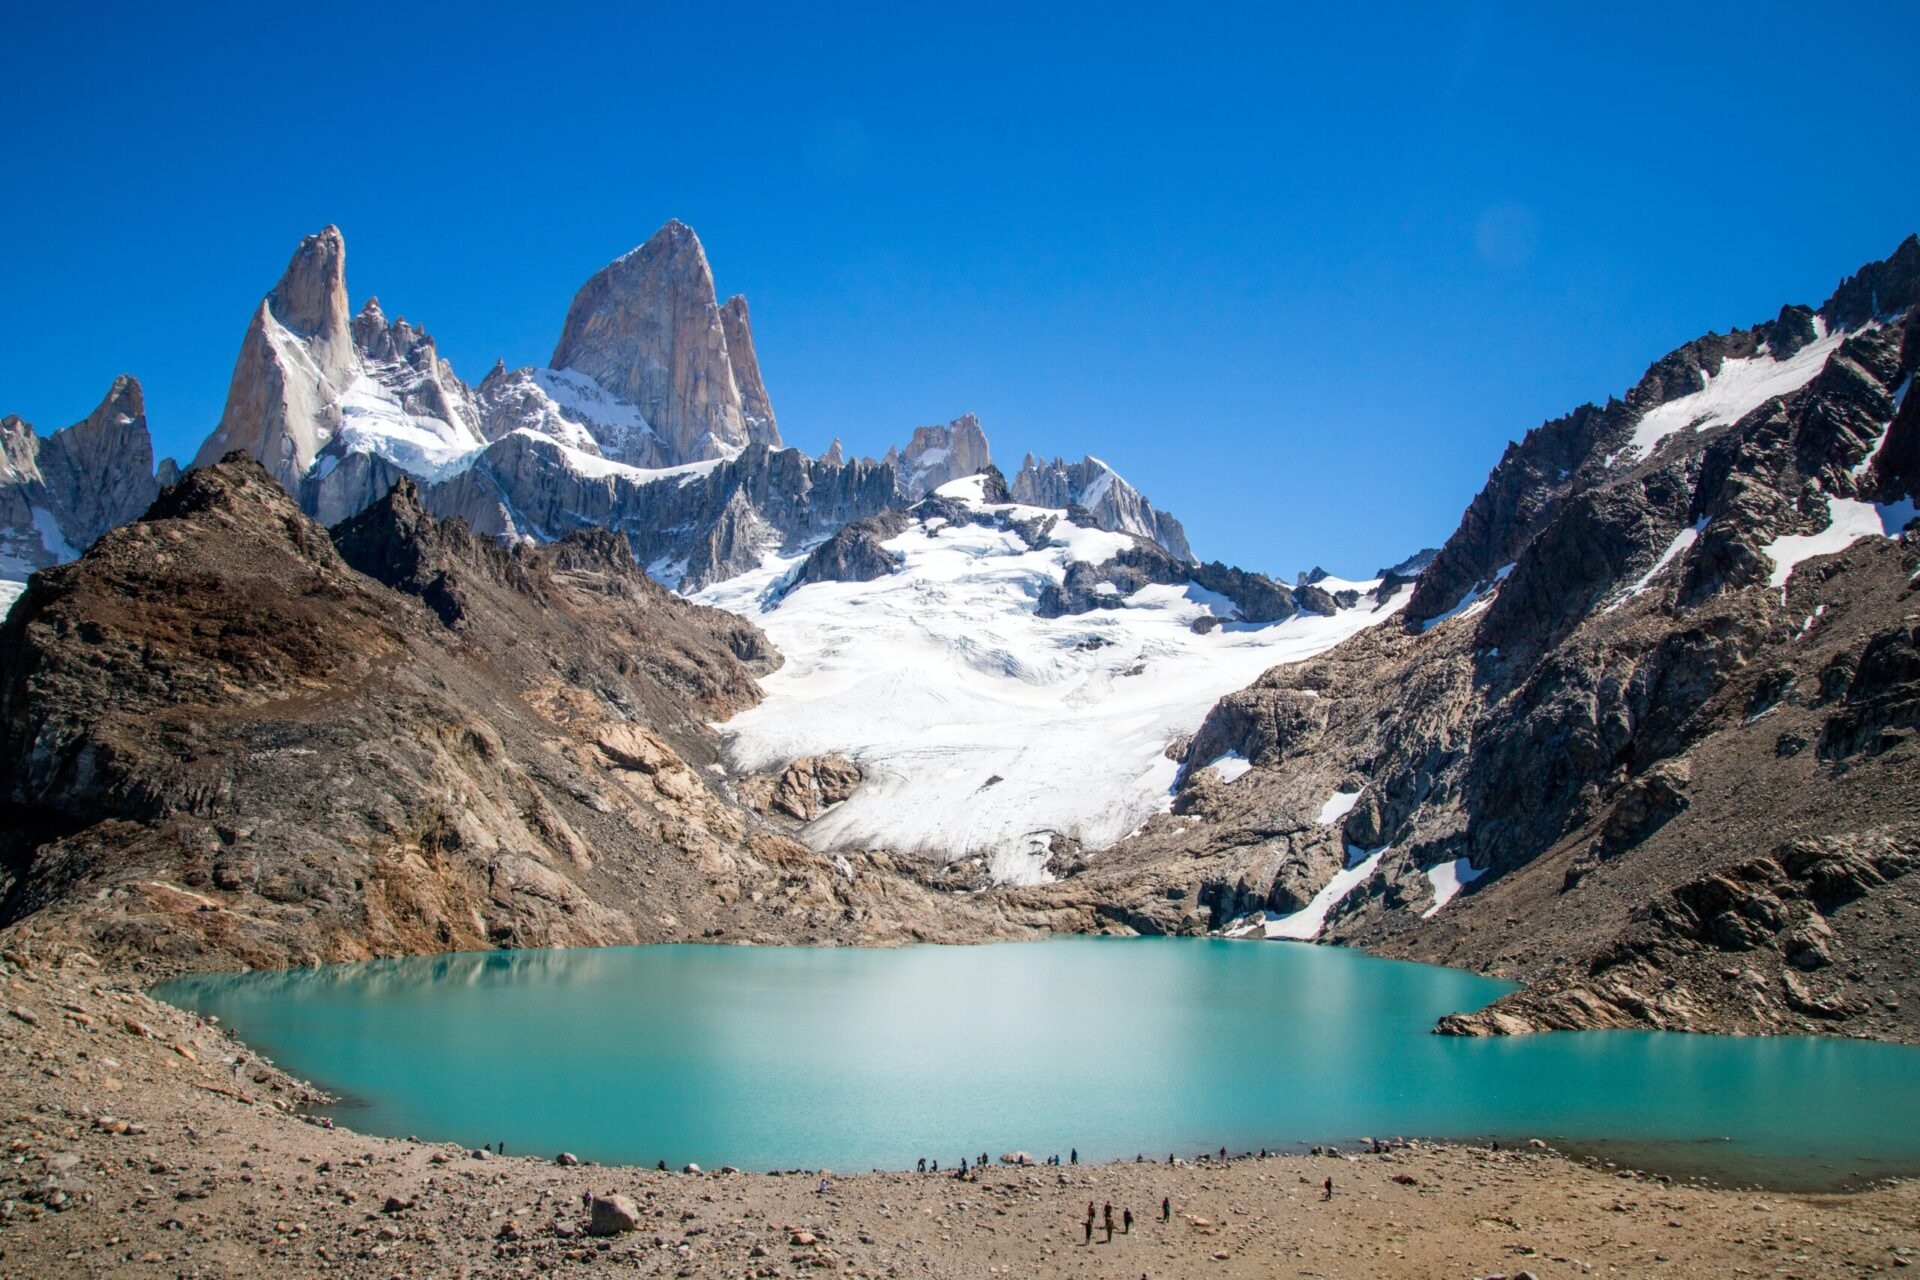 tourhub | Unu Raymi Tour Operator & Lodges | Patagonia: Mountain Escape El Chalten – 5 Days 